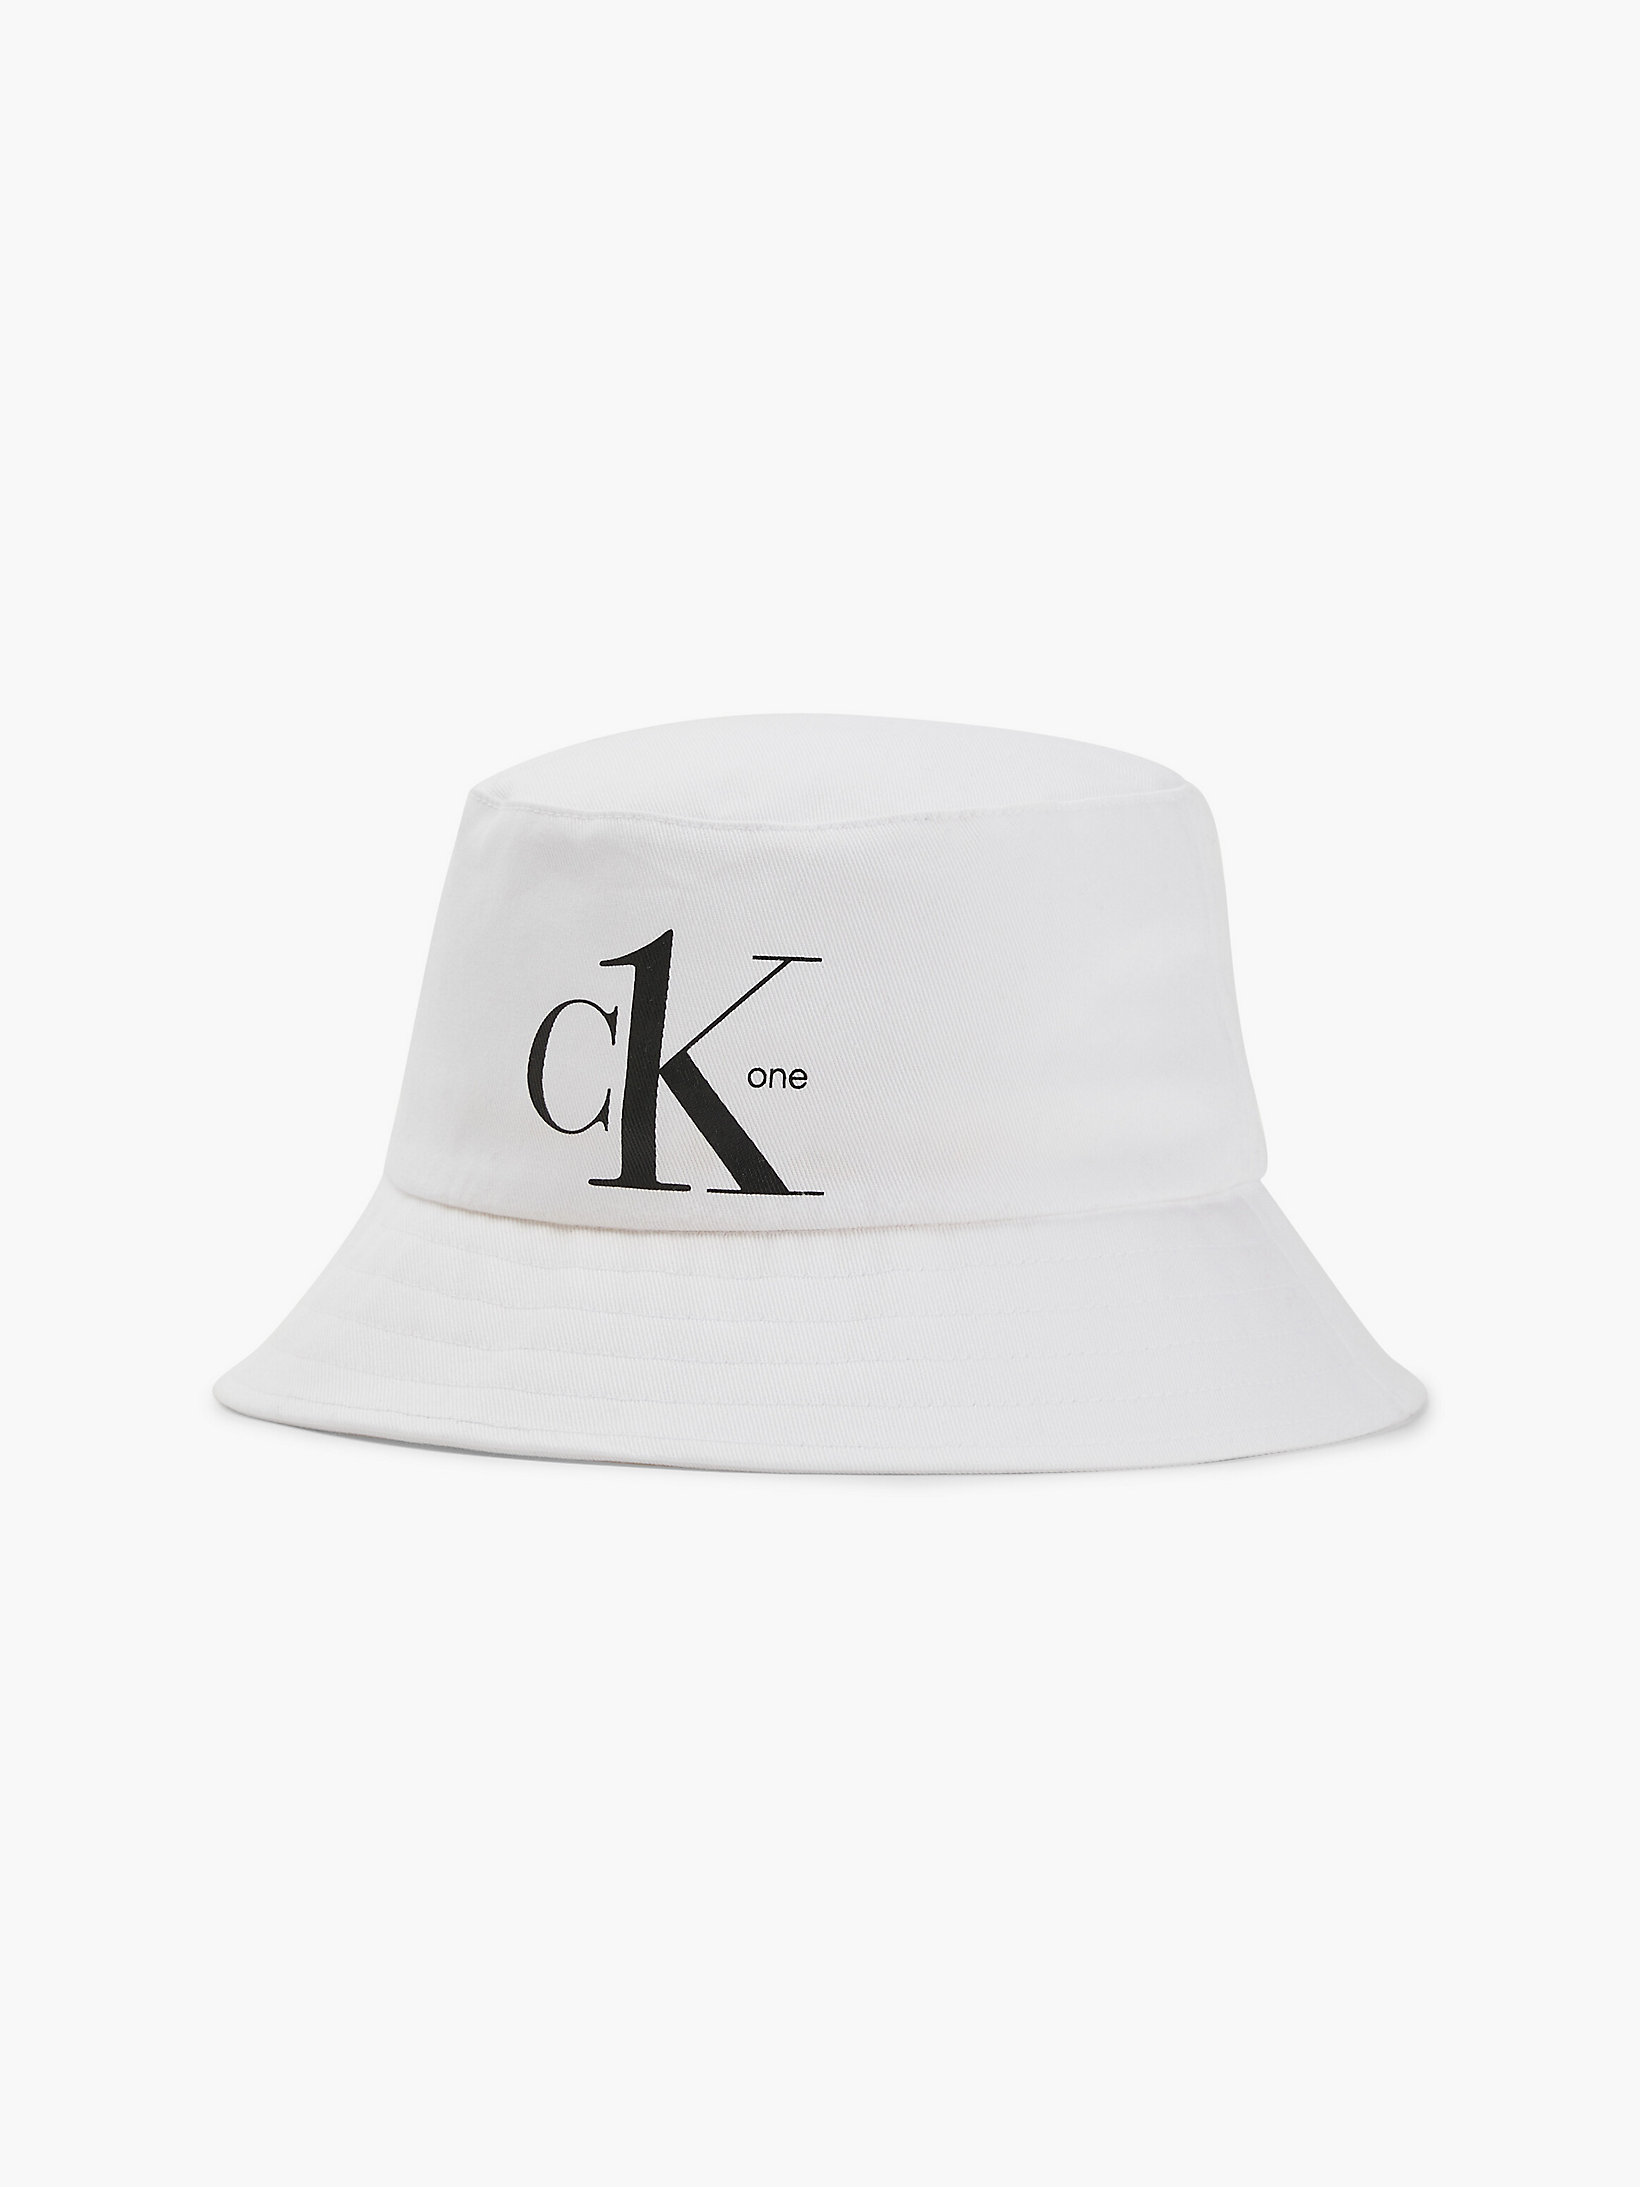 Pvh Classic White > Kapelusz Typu Bucket Hat Z Bawełny Organicznej - CK One > undefined unisex - Calvin Klein